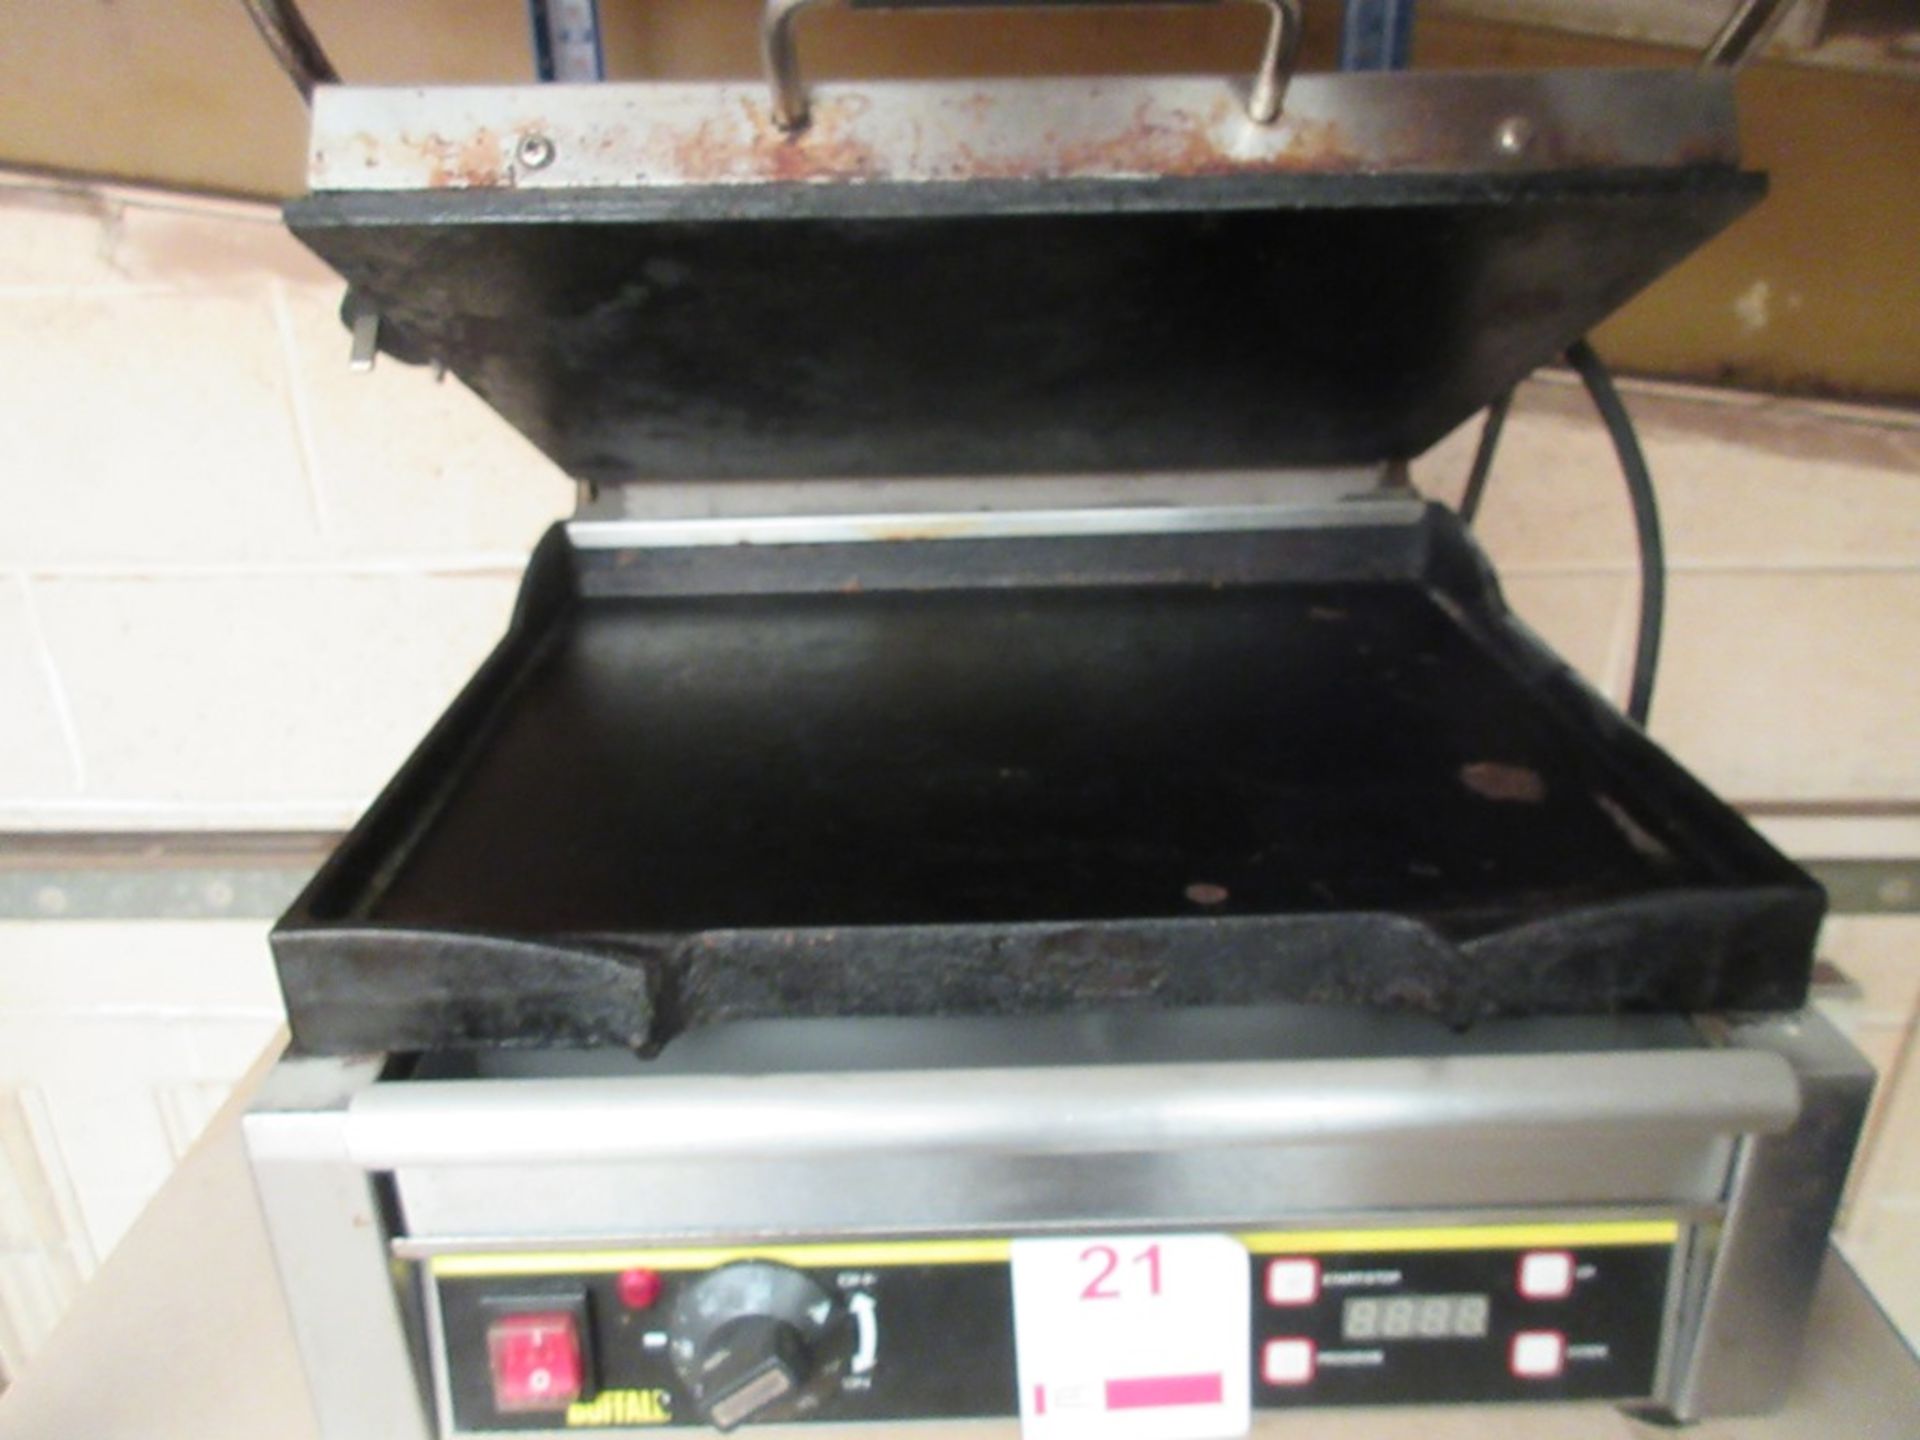 Buffalo bench top panini machine, model L519-B, serial no. 201410024784 - Image 4 of 5